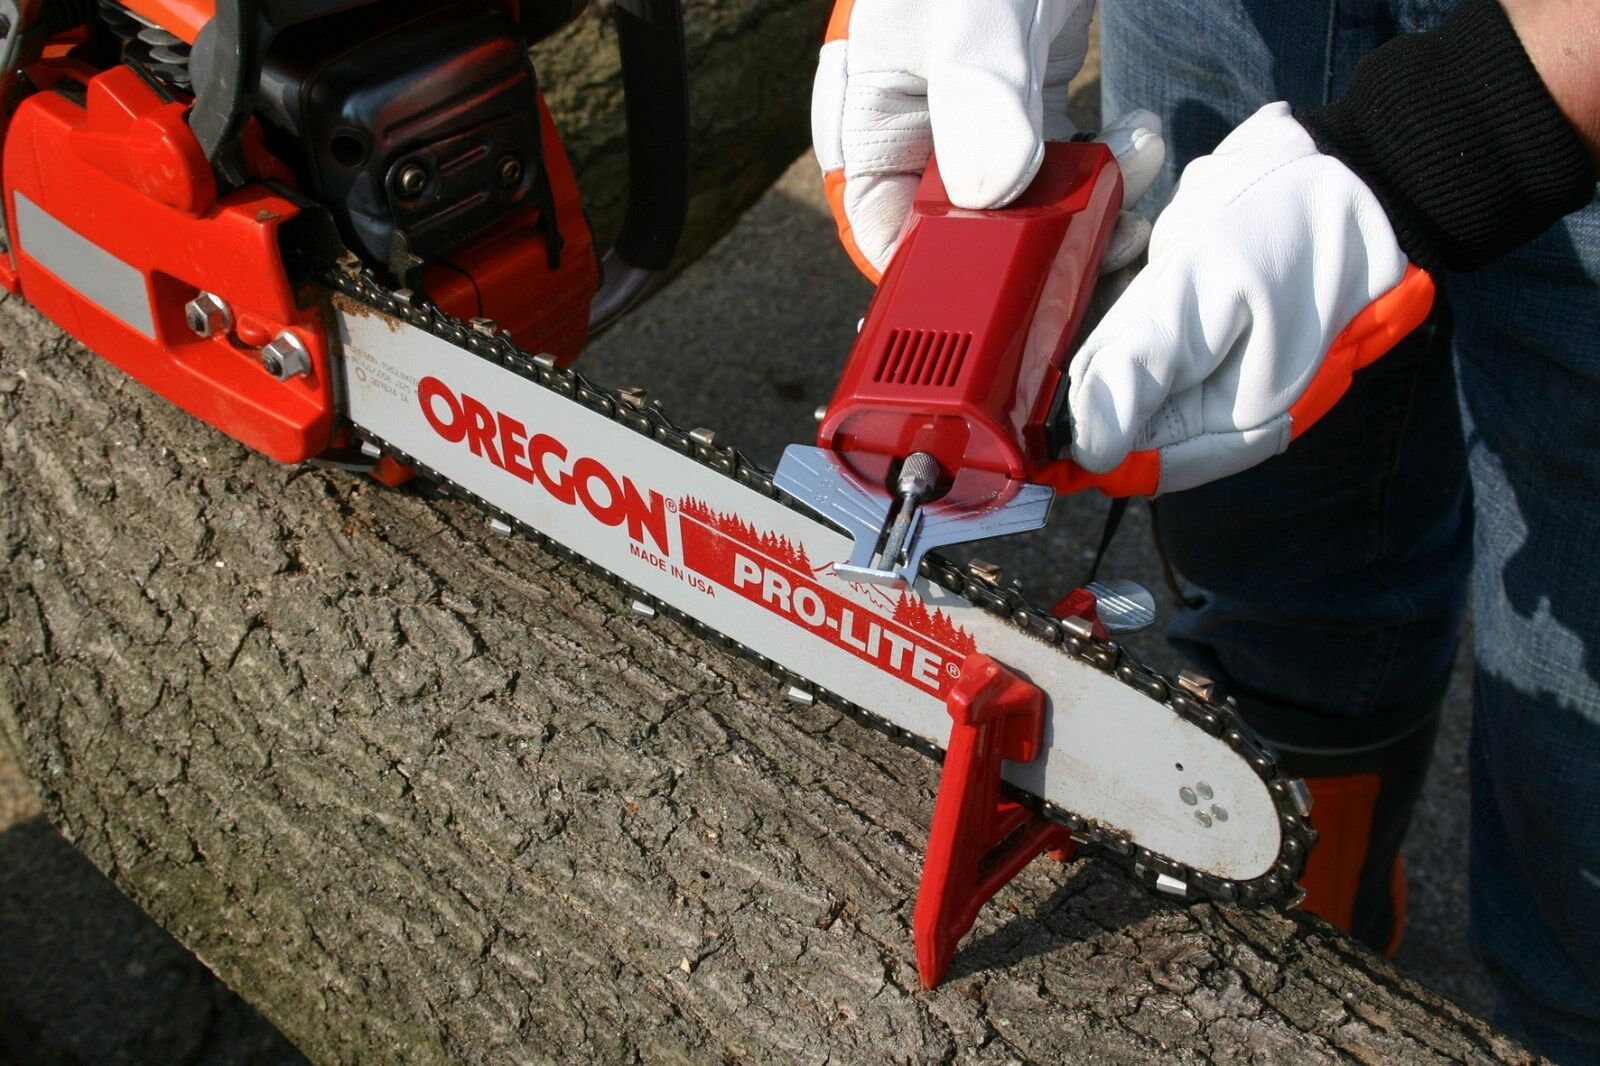 Oregon® láncélező  12V hengeres élezőkővel - 585015 -  eredeti minőségi alkatrész 